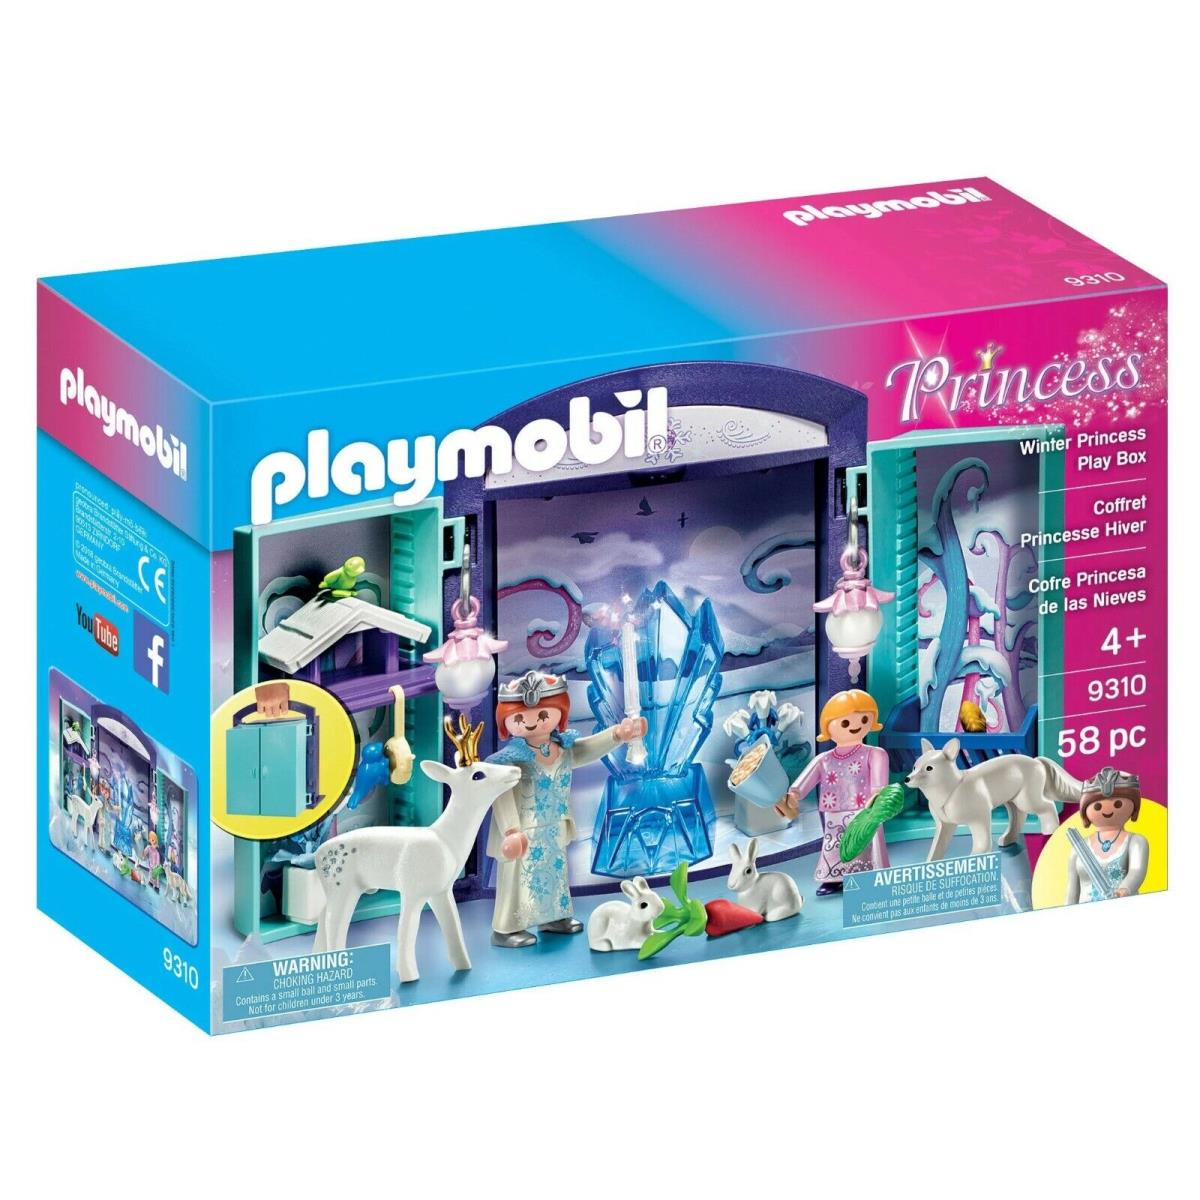 Playmobil 9310 Winter Princess Play Box Toy